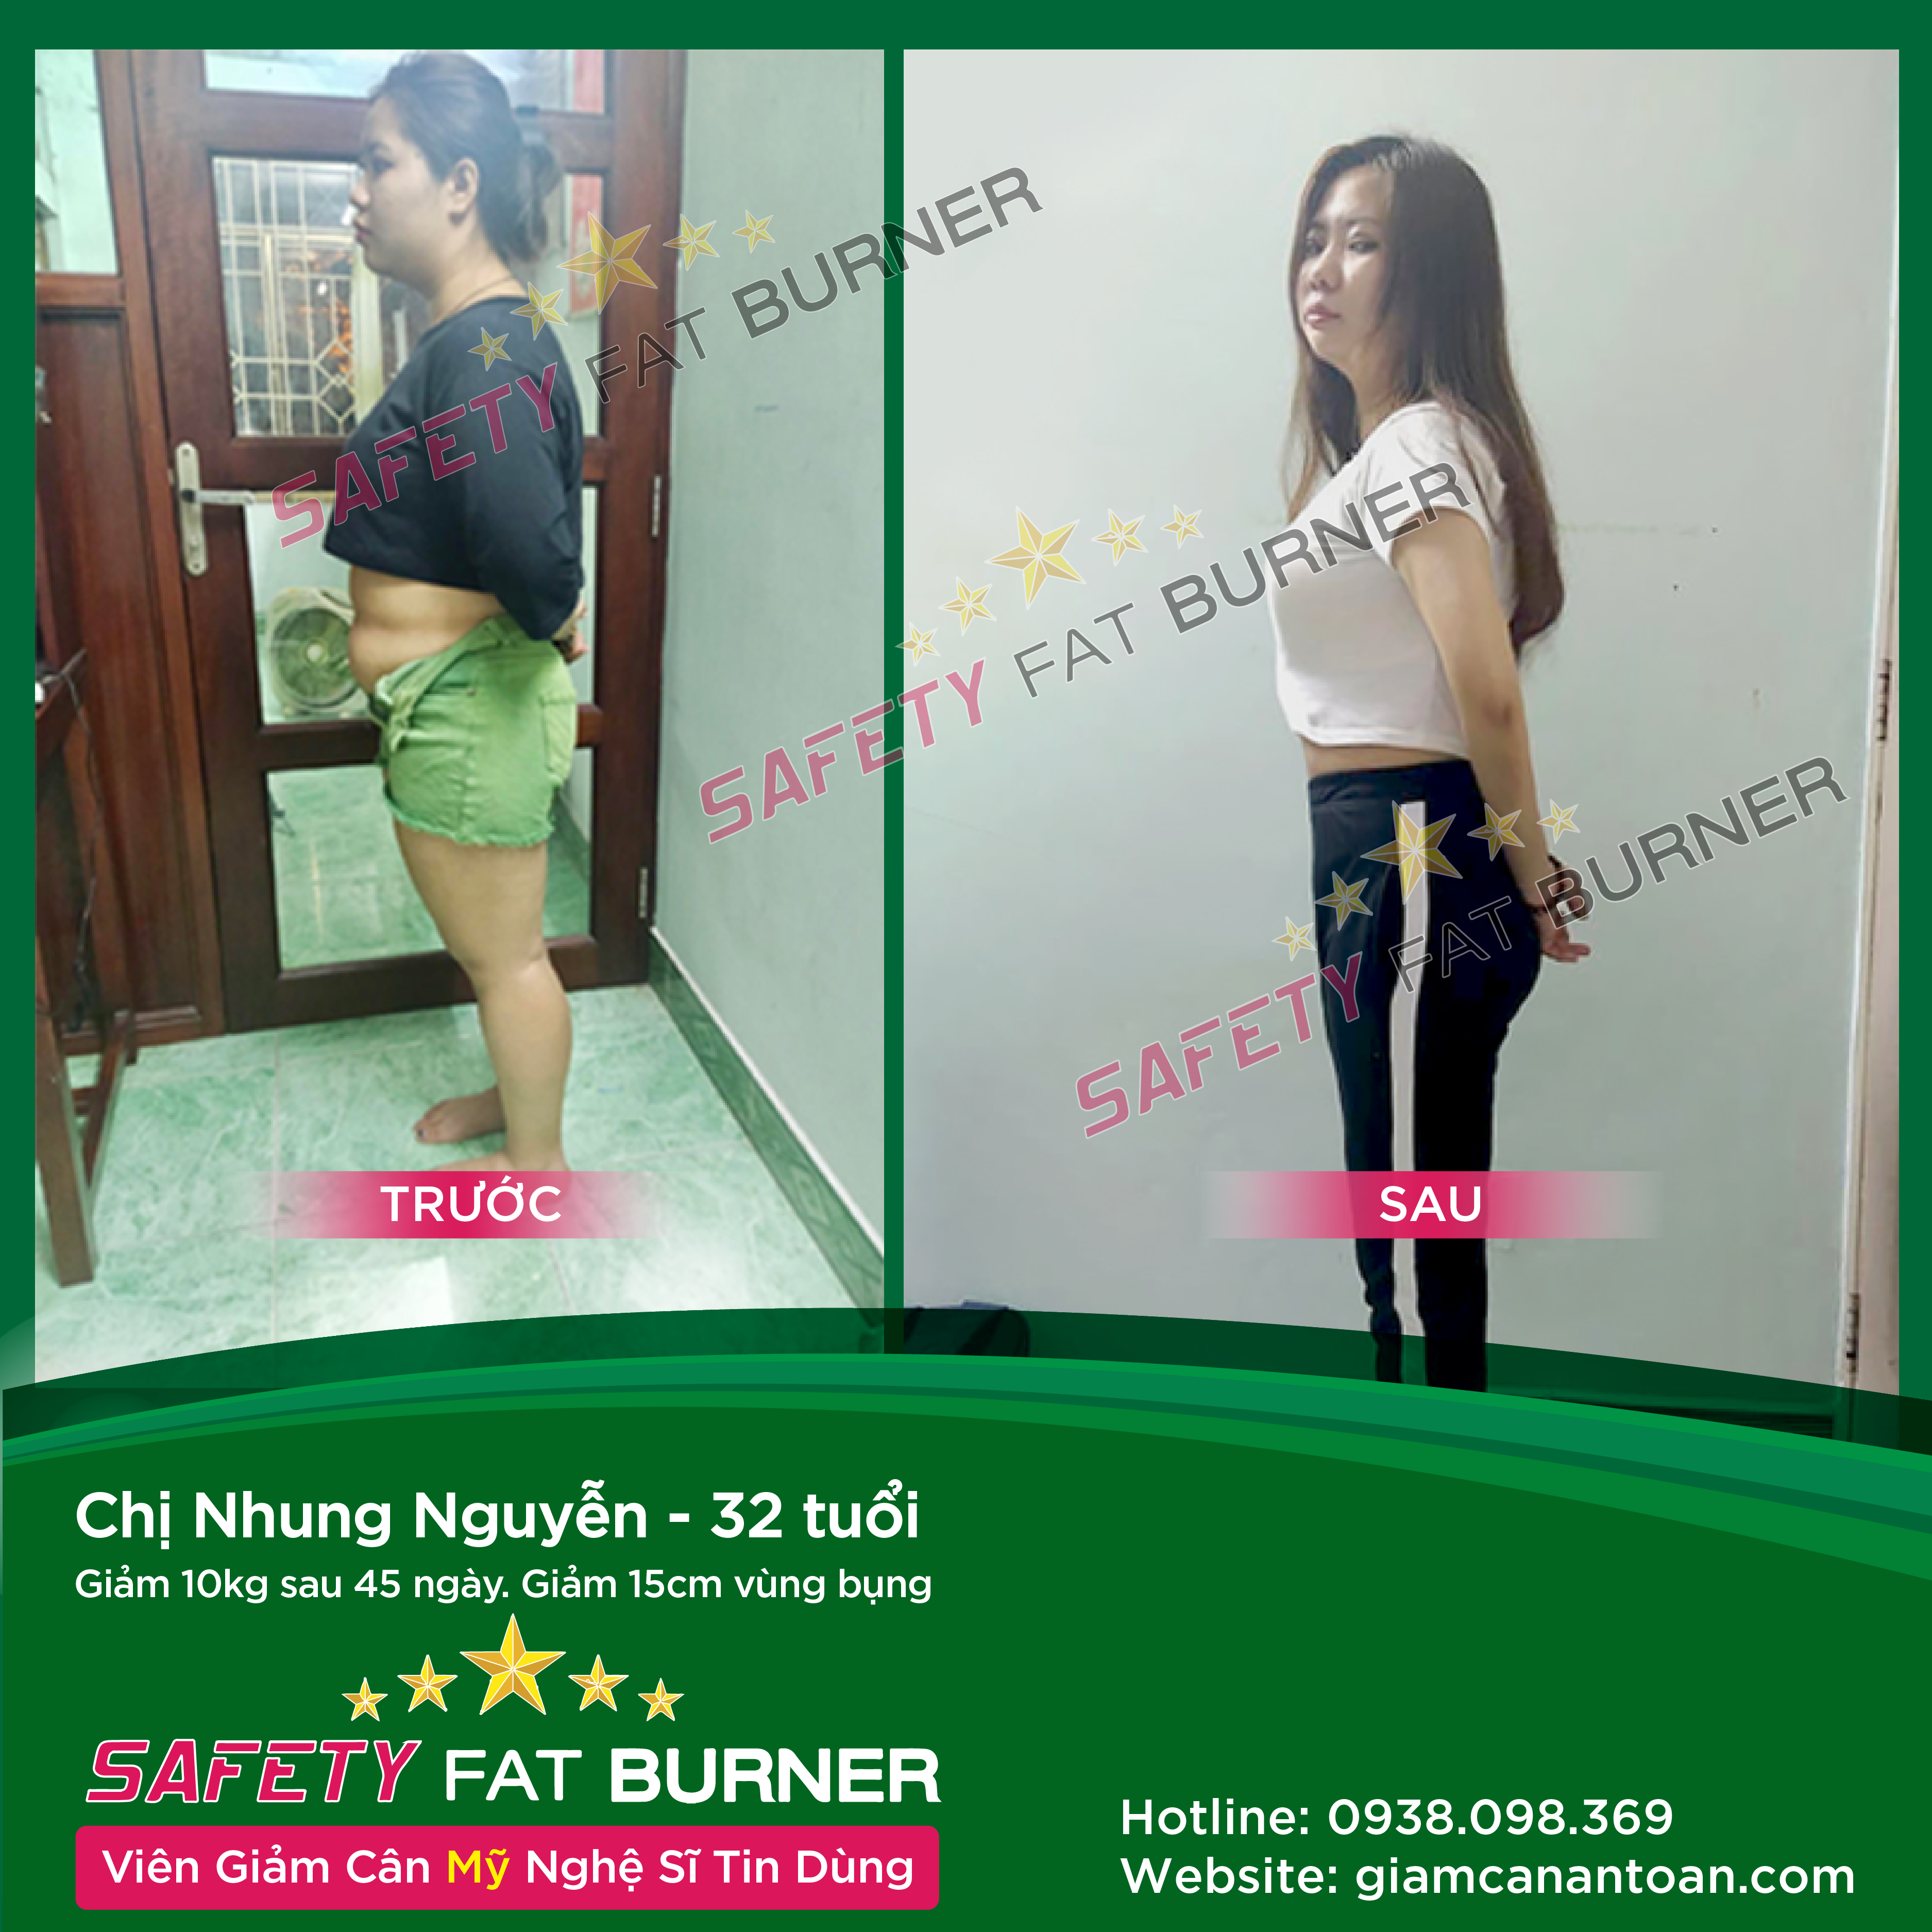  Chị Nhung Nguyễn - 32 tuổi. Giảm 10kg sau 45 ngày. Giảm 15cm vùng bụng.